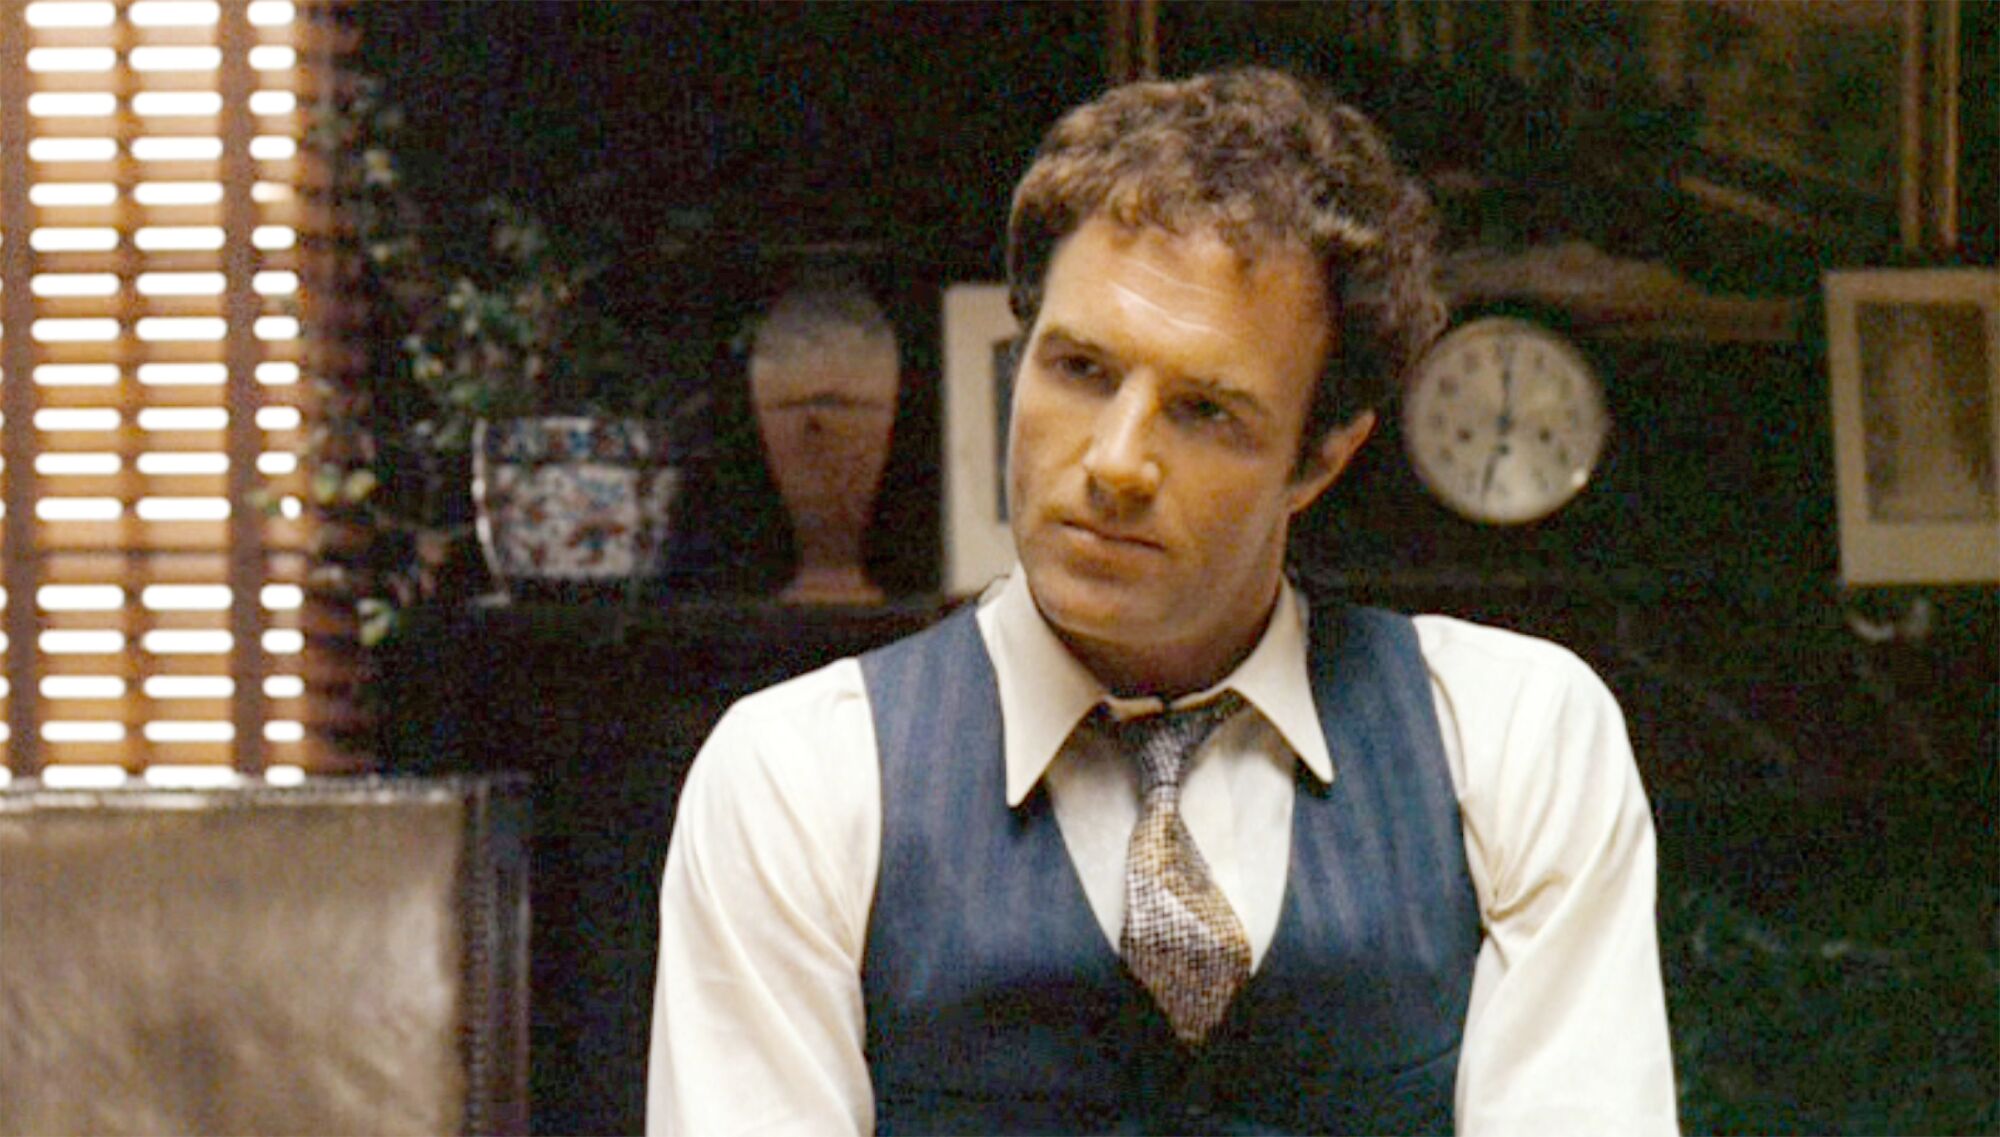 James Caan comme Santino "Fiston" Corléone dans "Le parrain" en 1972.